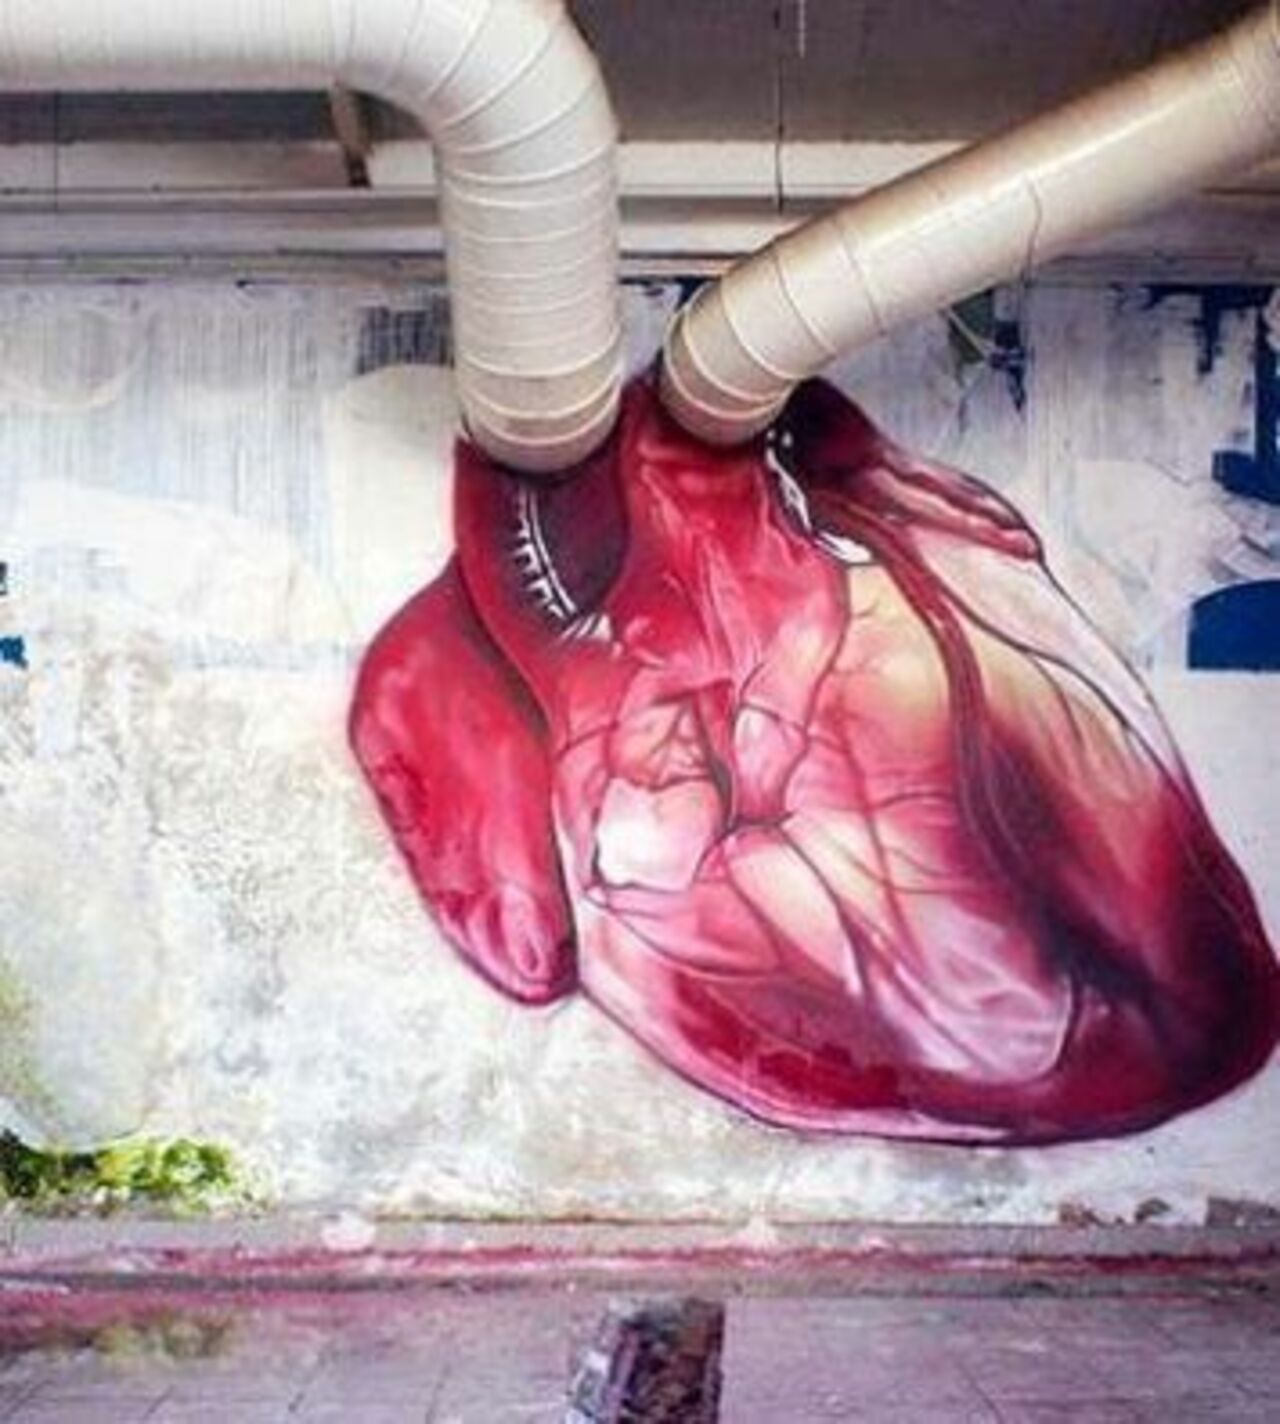 #Heart – Creative #Streetart | Be ▲rtist - Be ▲rt https://beartistbeart.com/2016/08/22/heart-creative-streetart/?utm_campaign=crowdfire&utm_content=crowdfire&utm_medium=social&utm_source=twitter https://t.co/0ENcJHpPee